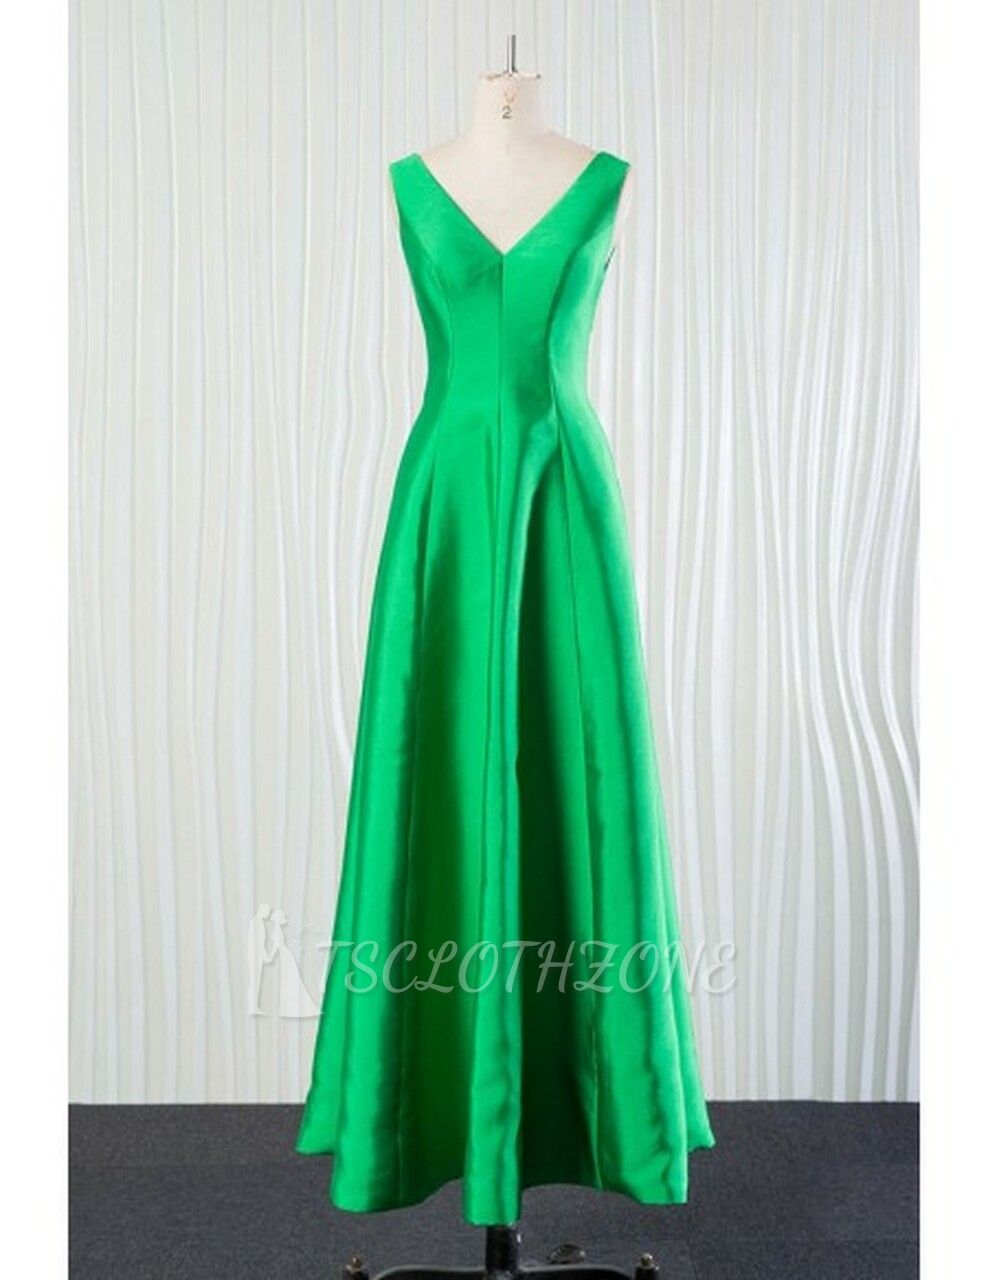 Long Green Satin V Neck Bridesmaid Dress